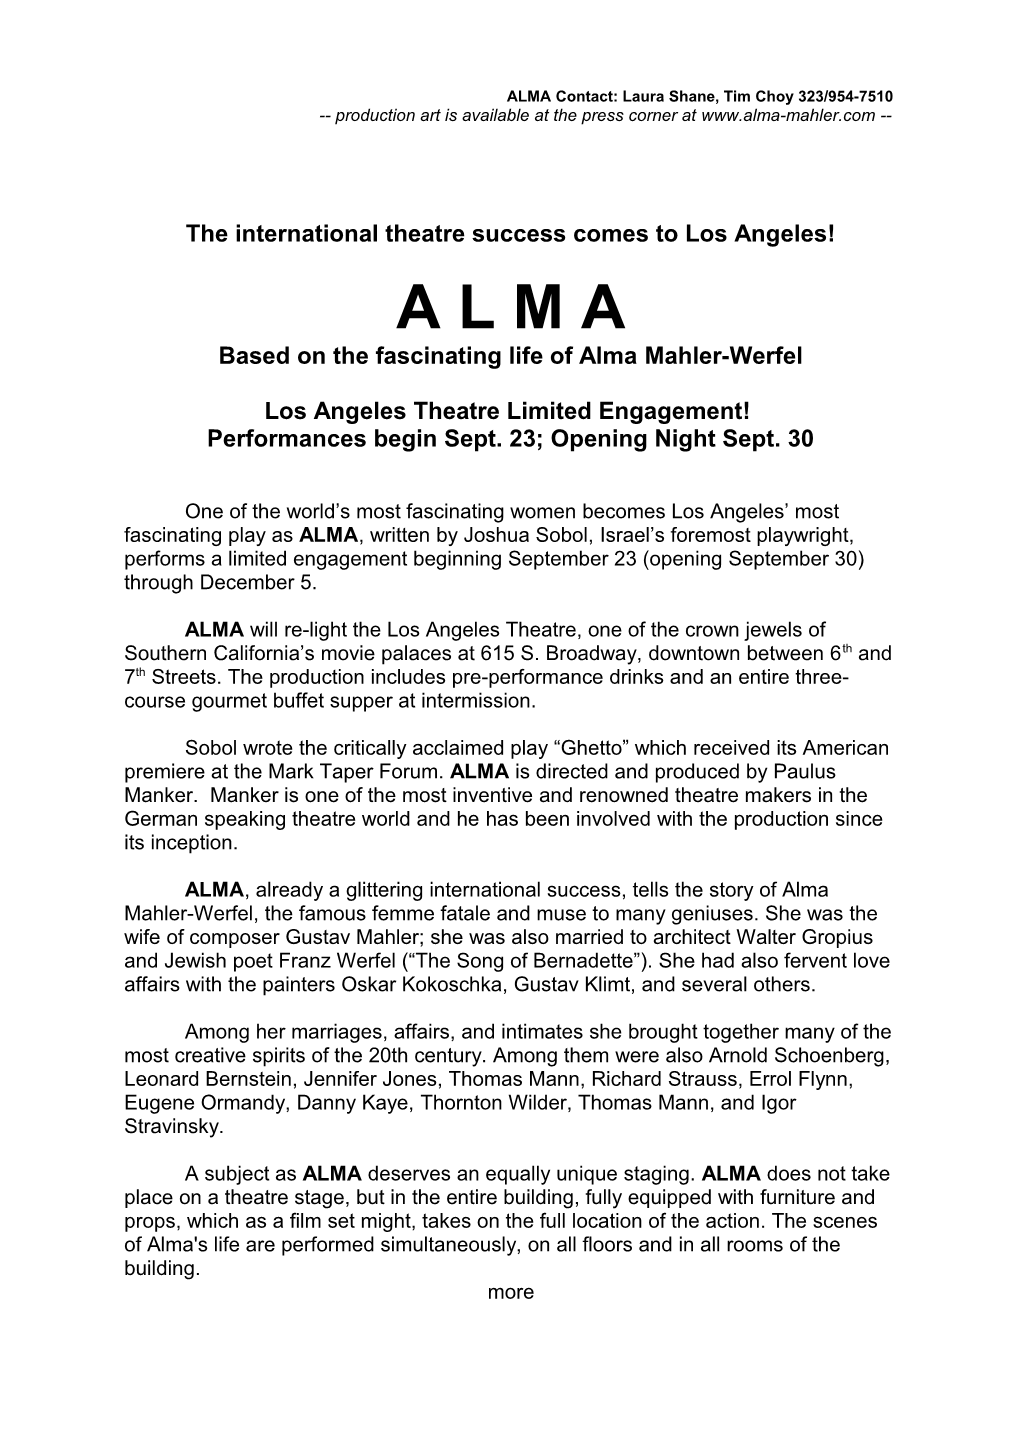 Alma in Los Angeles